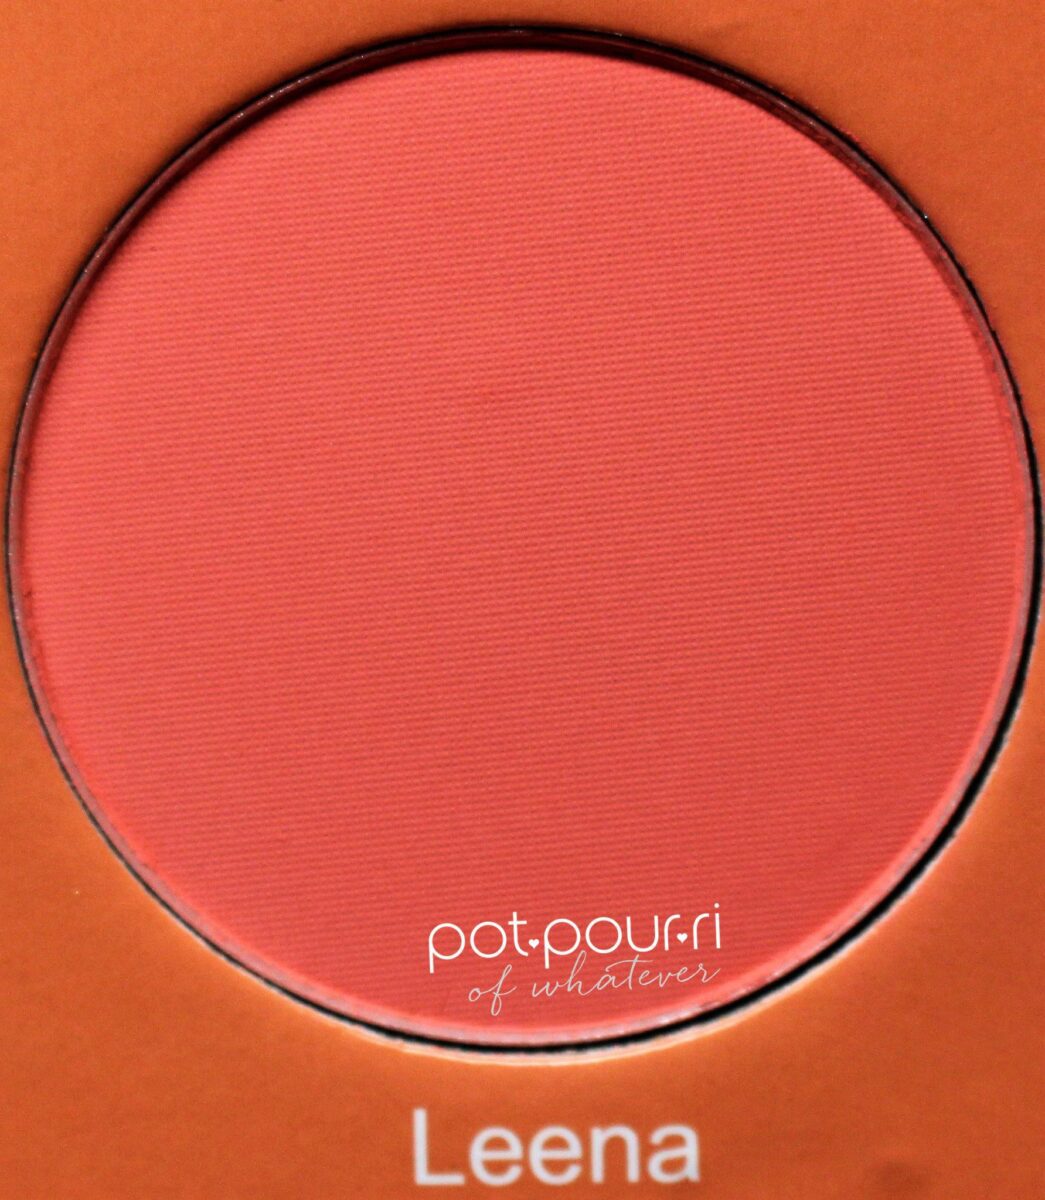 Juvia-saharan-vol-11-blush-palette-Leena-watermellon-peachy-pink-matte